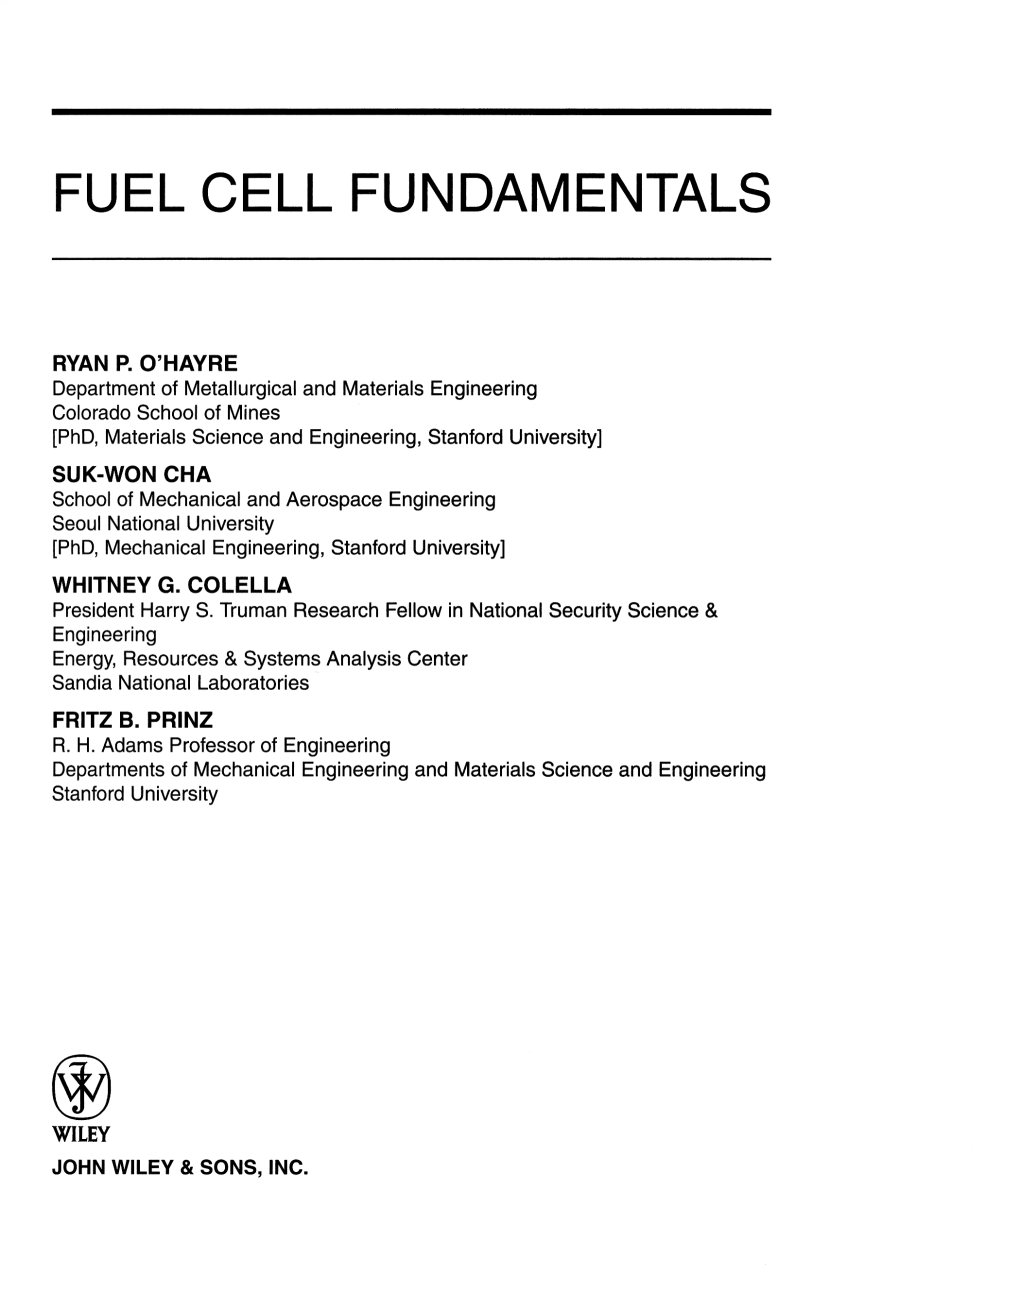 Fuel Cell Fundamentals